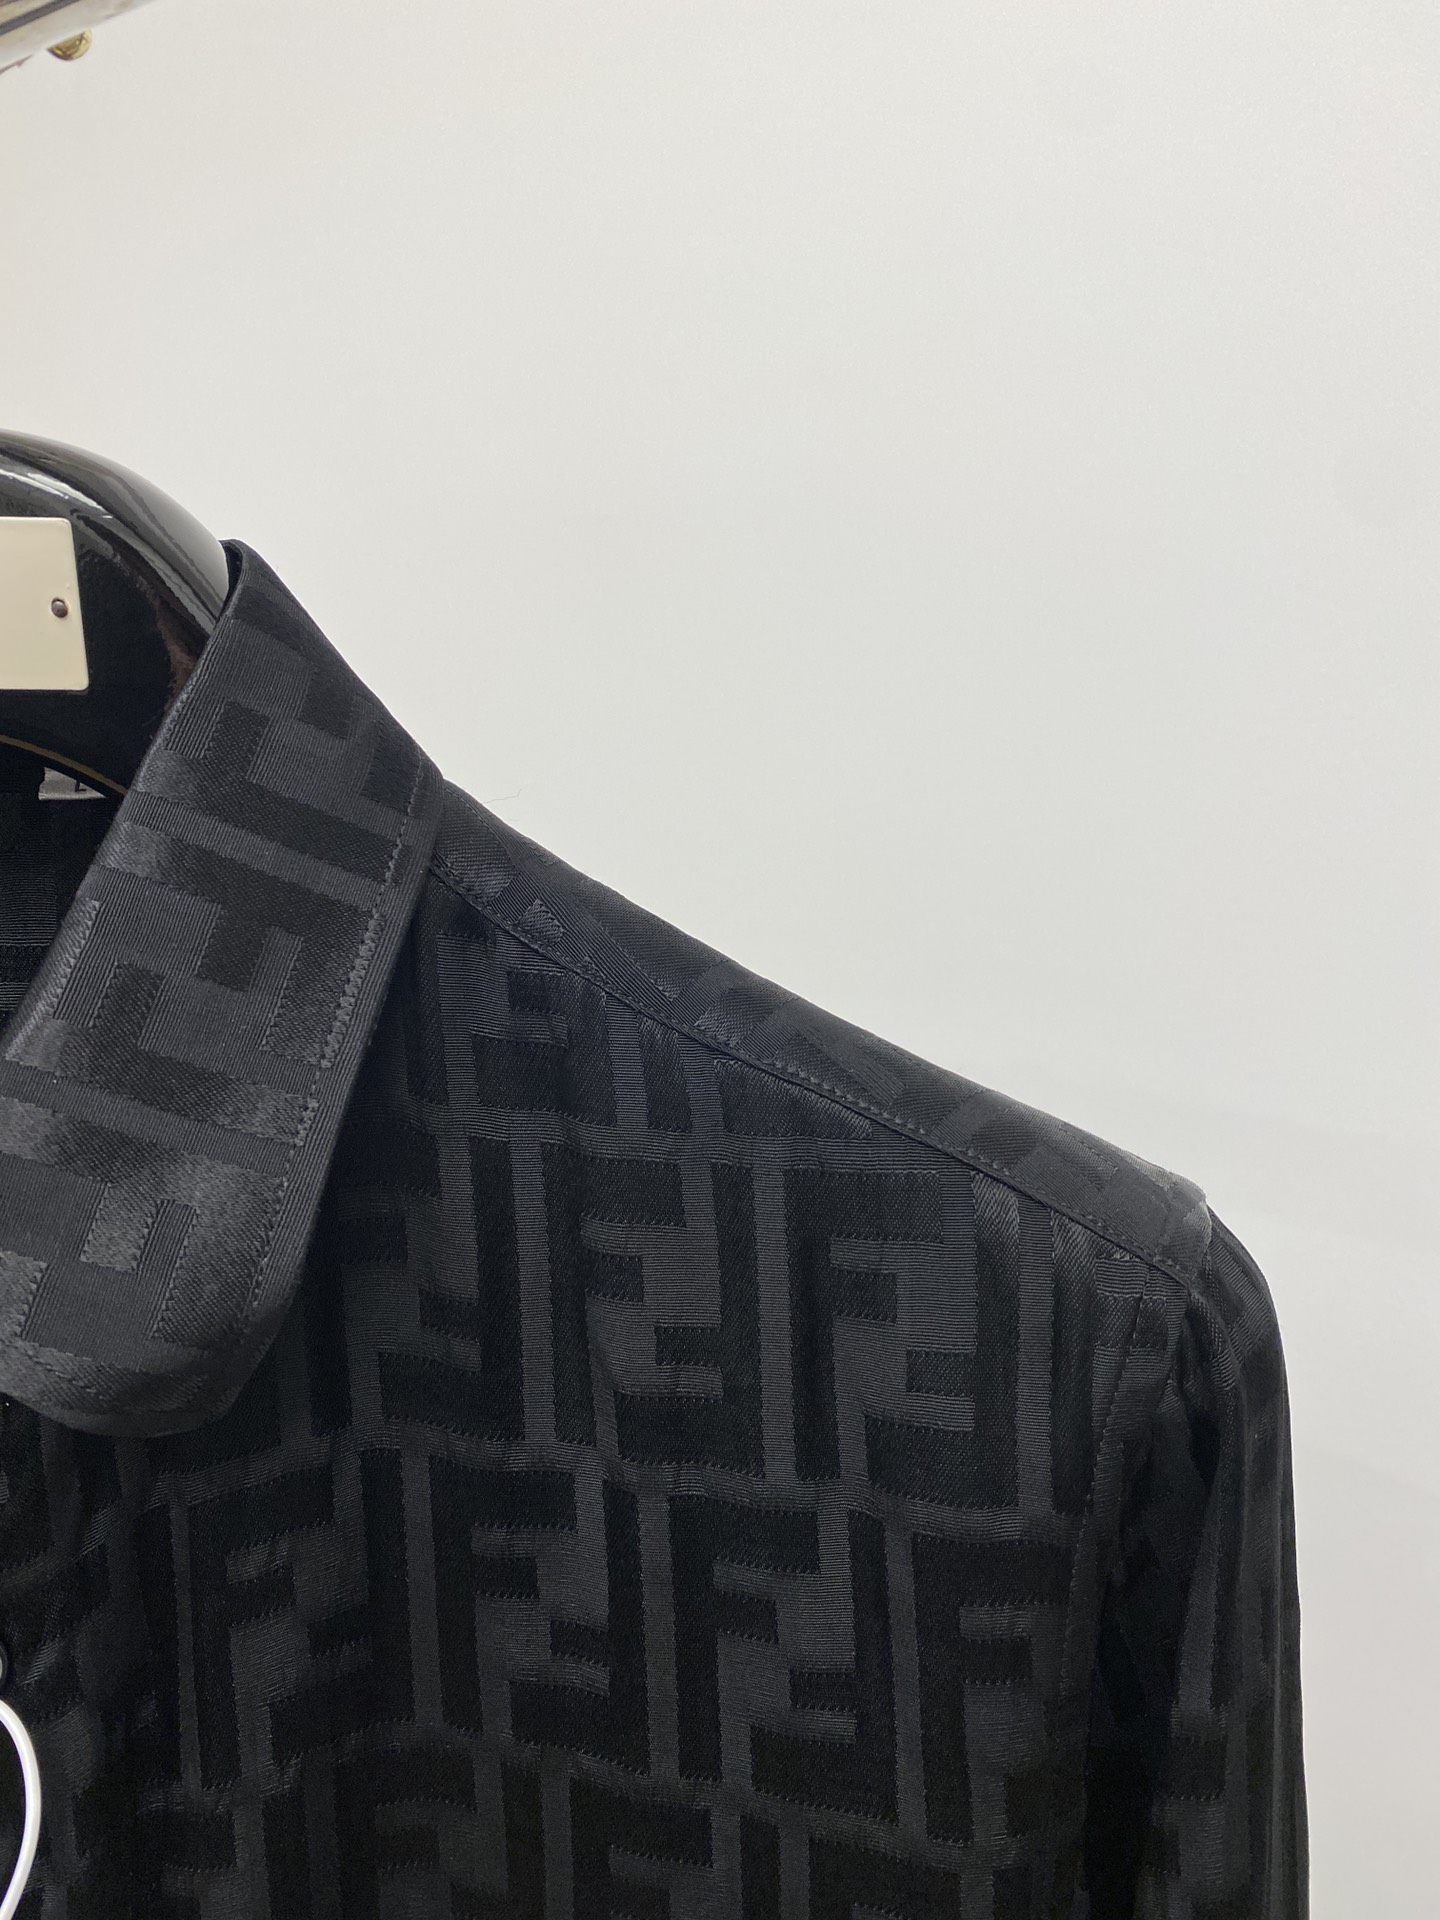 芬迪2024新款衬衫打造时装艺术感立体剪裁修身版型上身效果很帅气微彰显品位整体细节可以对比效果非常有型码